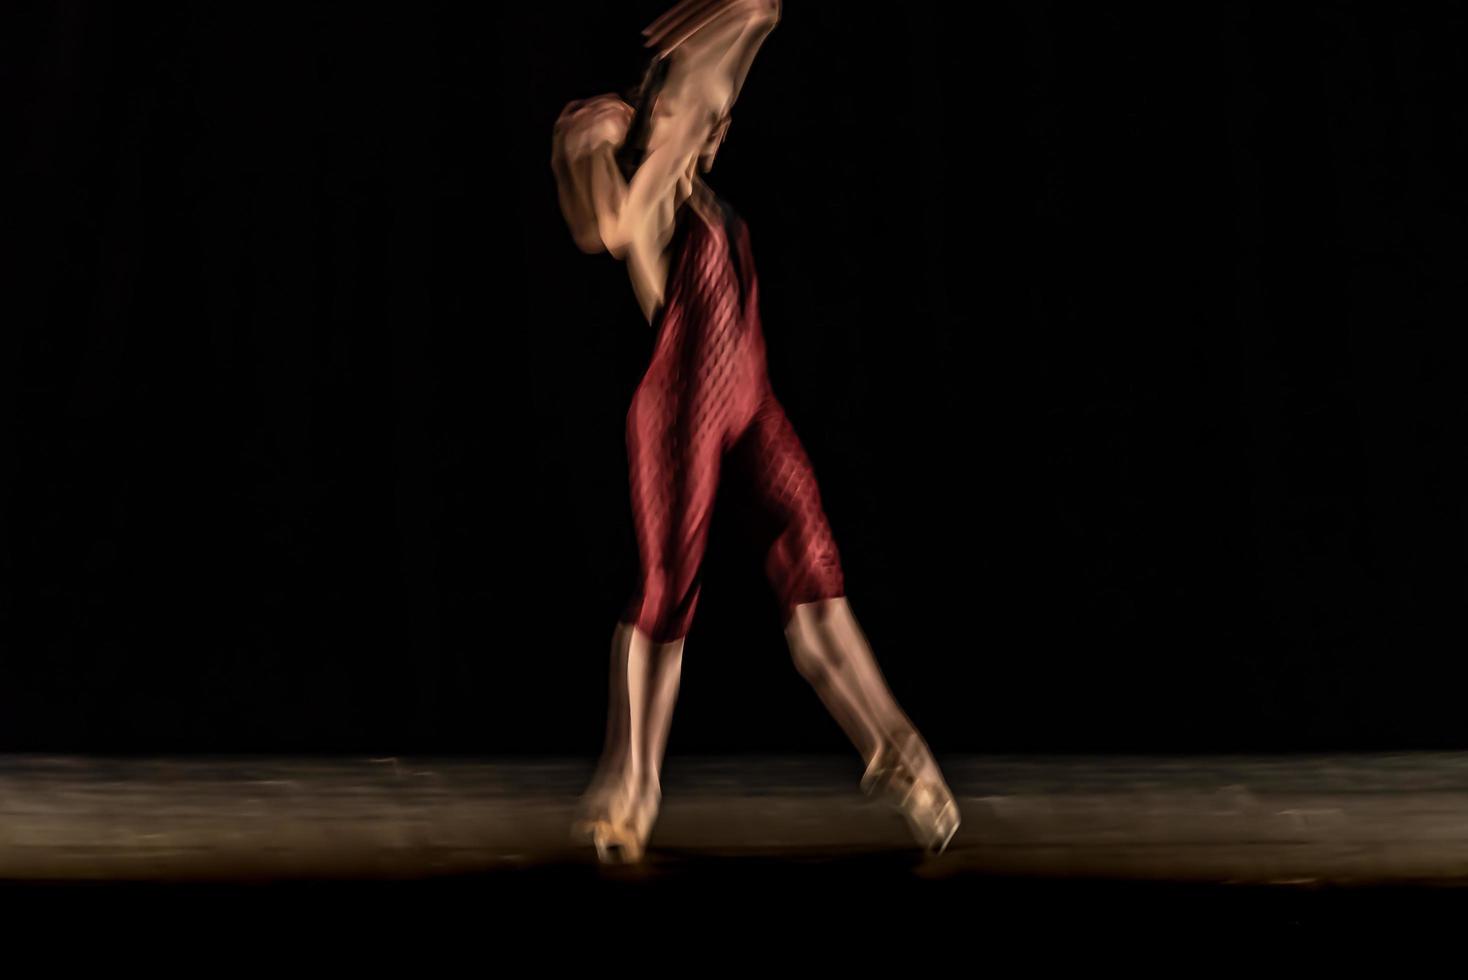 de abstracte beweging van de dans foto